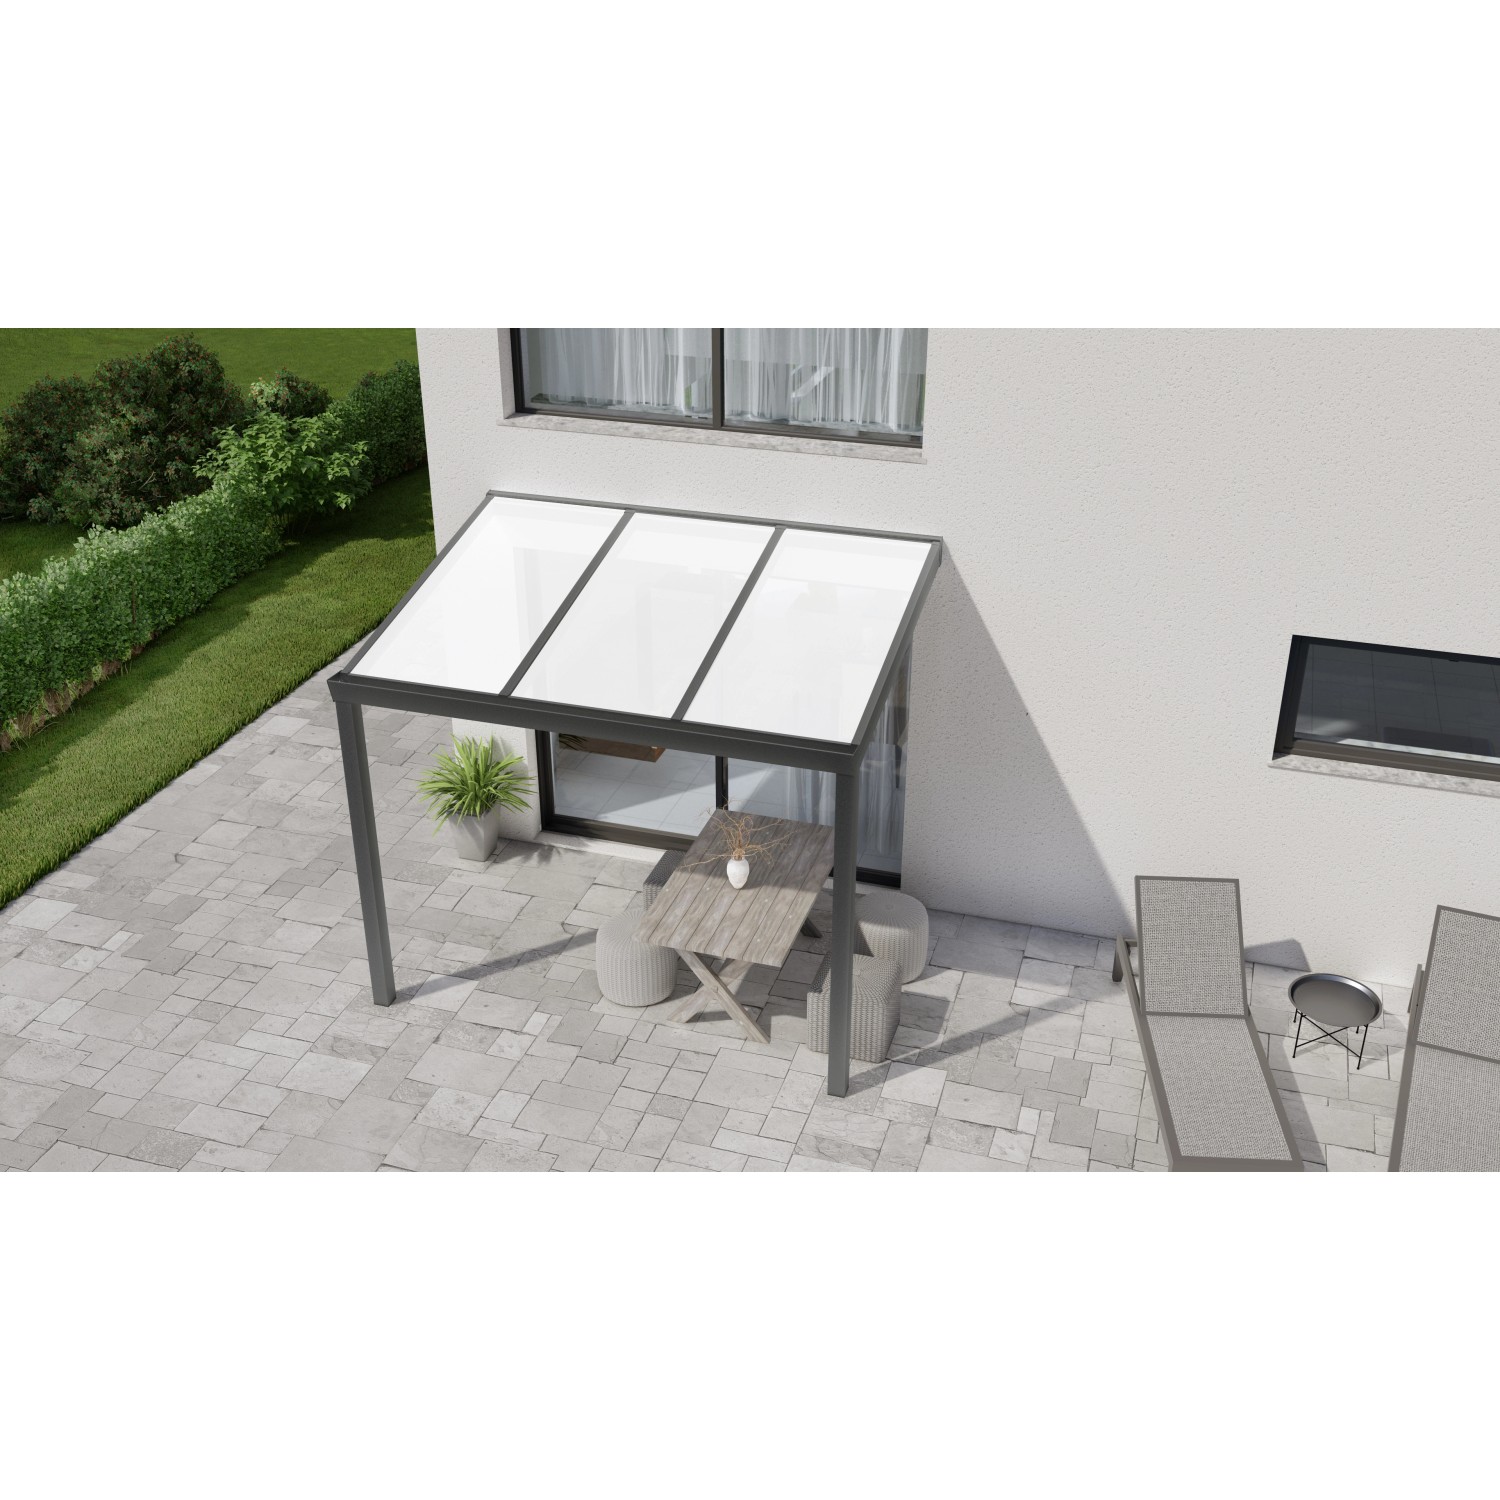 Terrassenüberdachung Professional 300 cm x 200 cm Anthrazit Struktur PC Opal von GARDENDREAMS